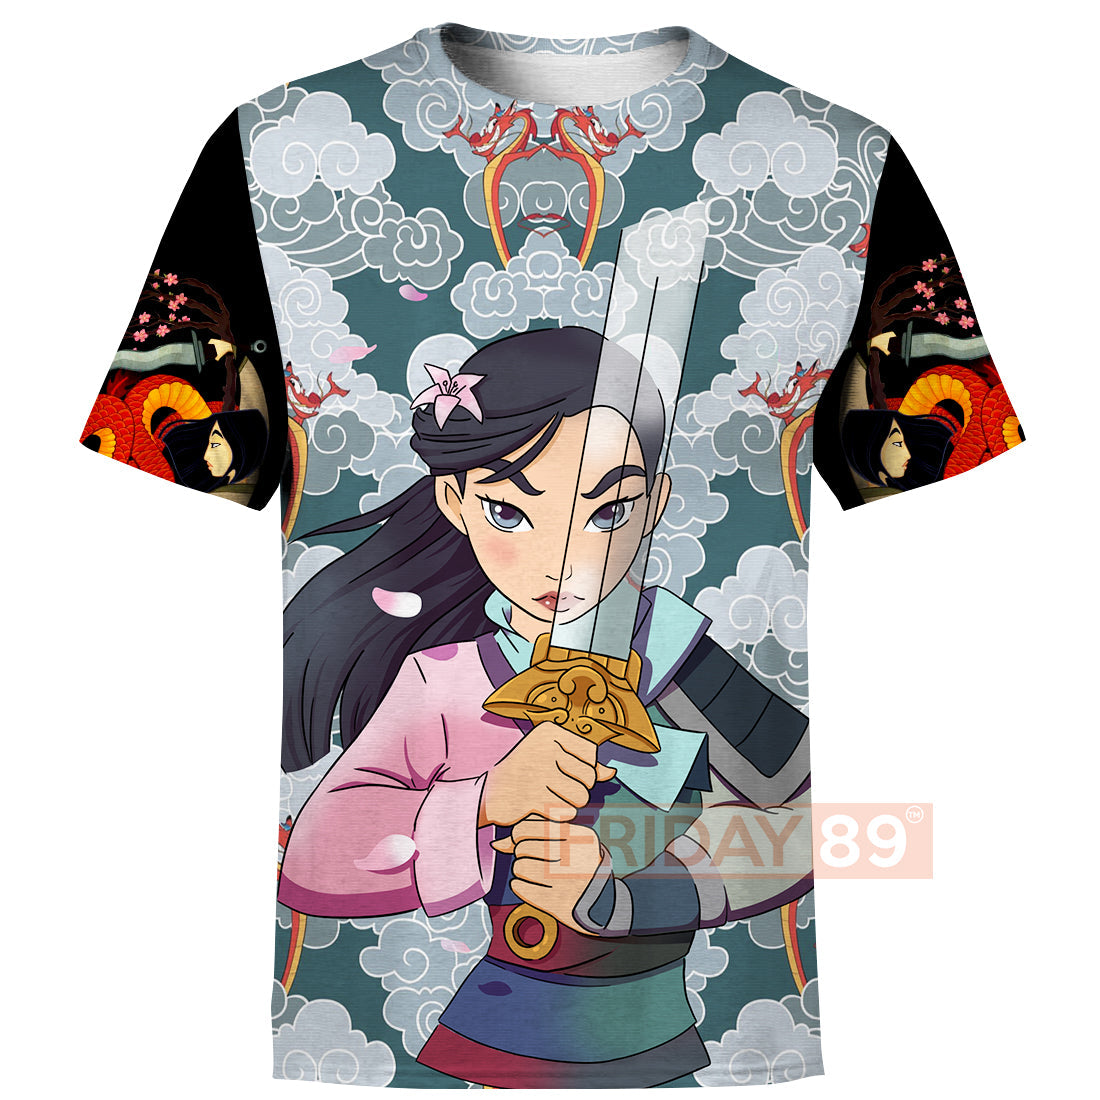 Unifinz DN T-shirt Mulan Tee Hoodie Warrior Disney Princess Beauty Art Mulan Mushu T-shirt High Quality DN Mulan Hoodie Sweater Tank 2025